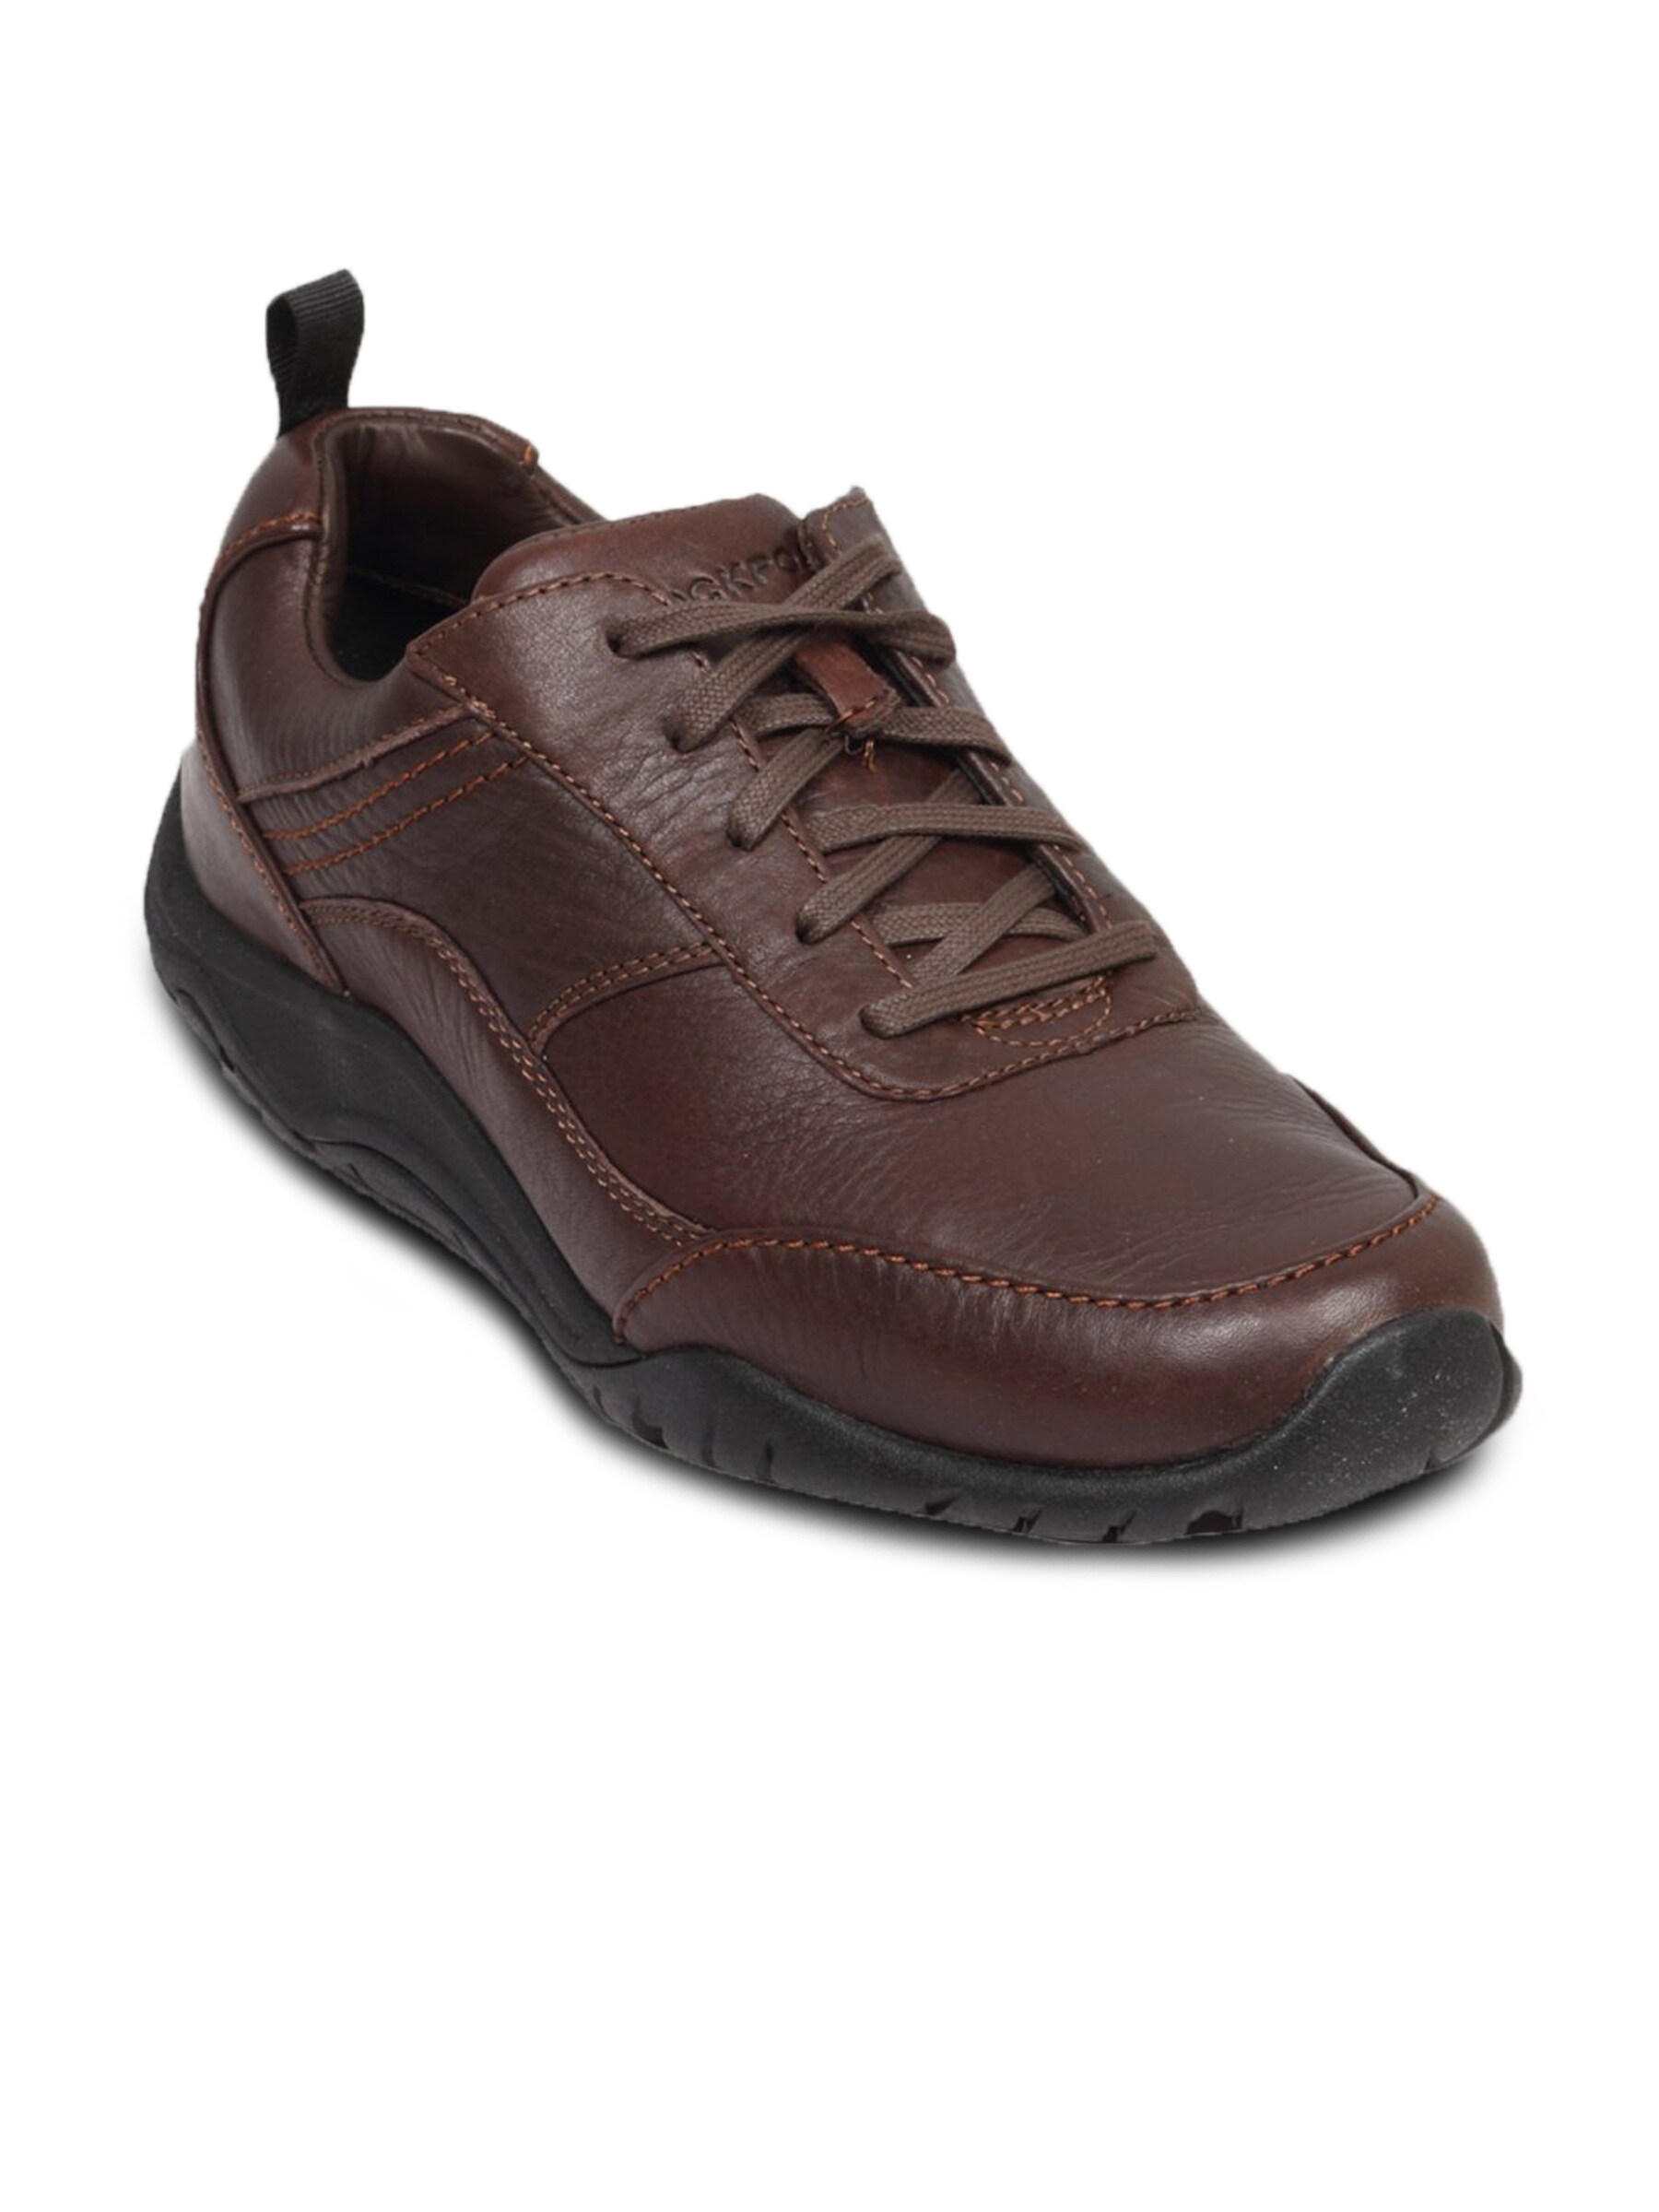 Rockport Men's Gavia Dark Brown Shoe